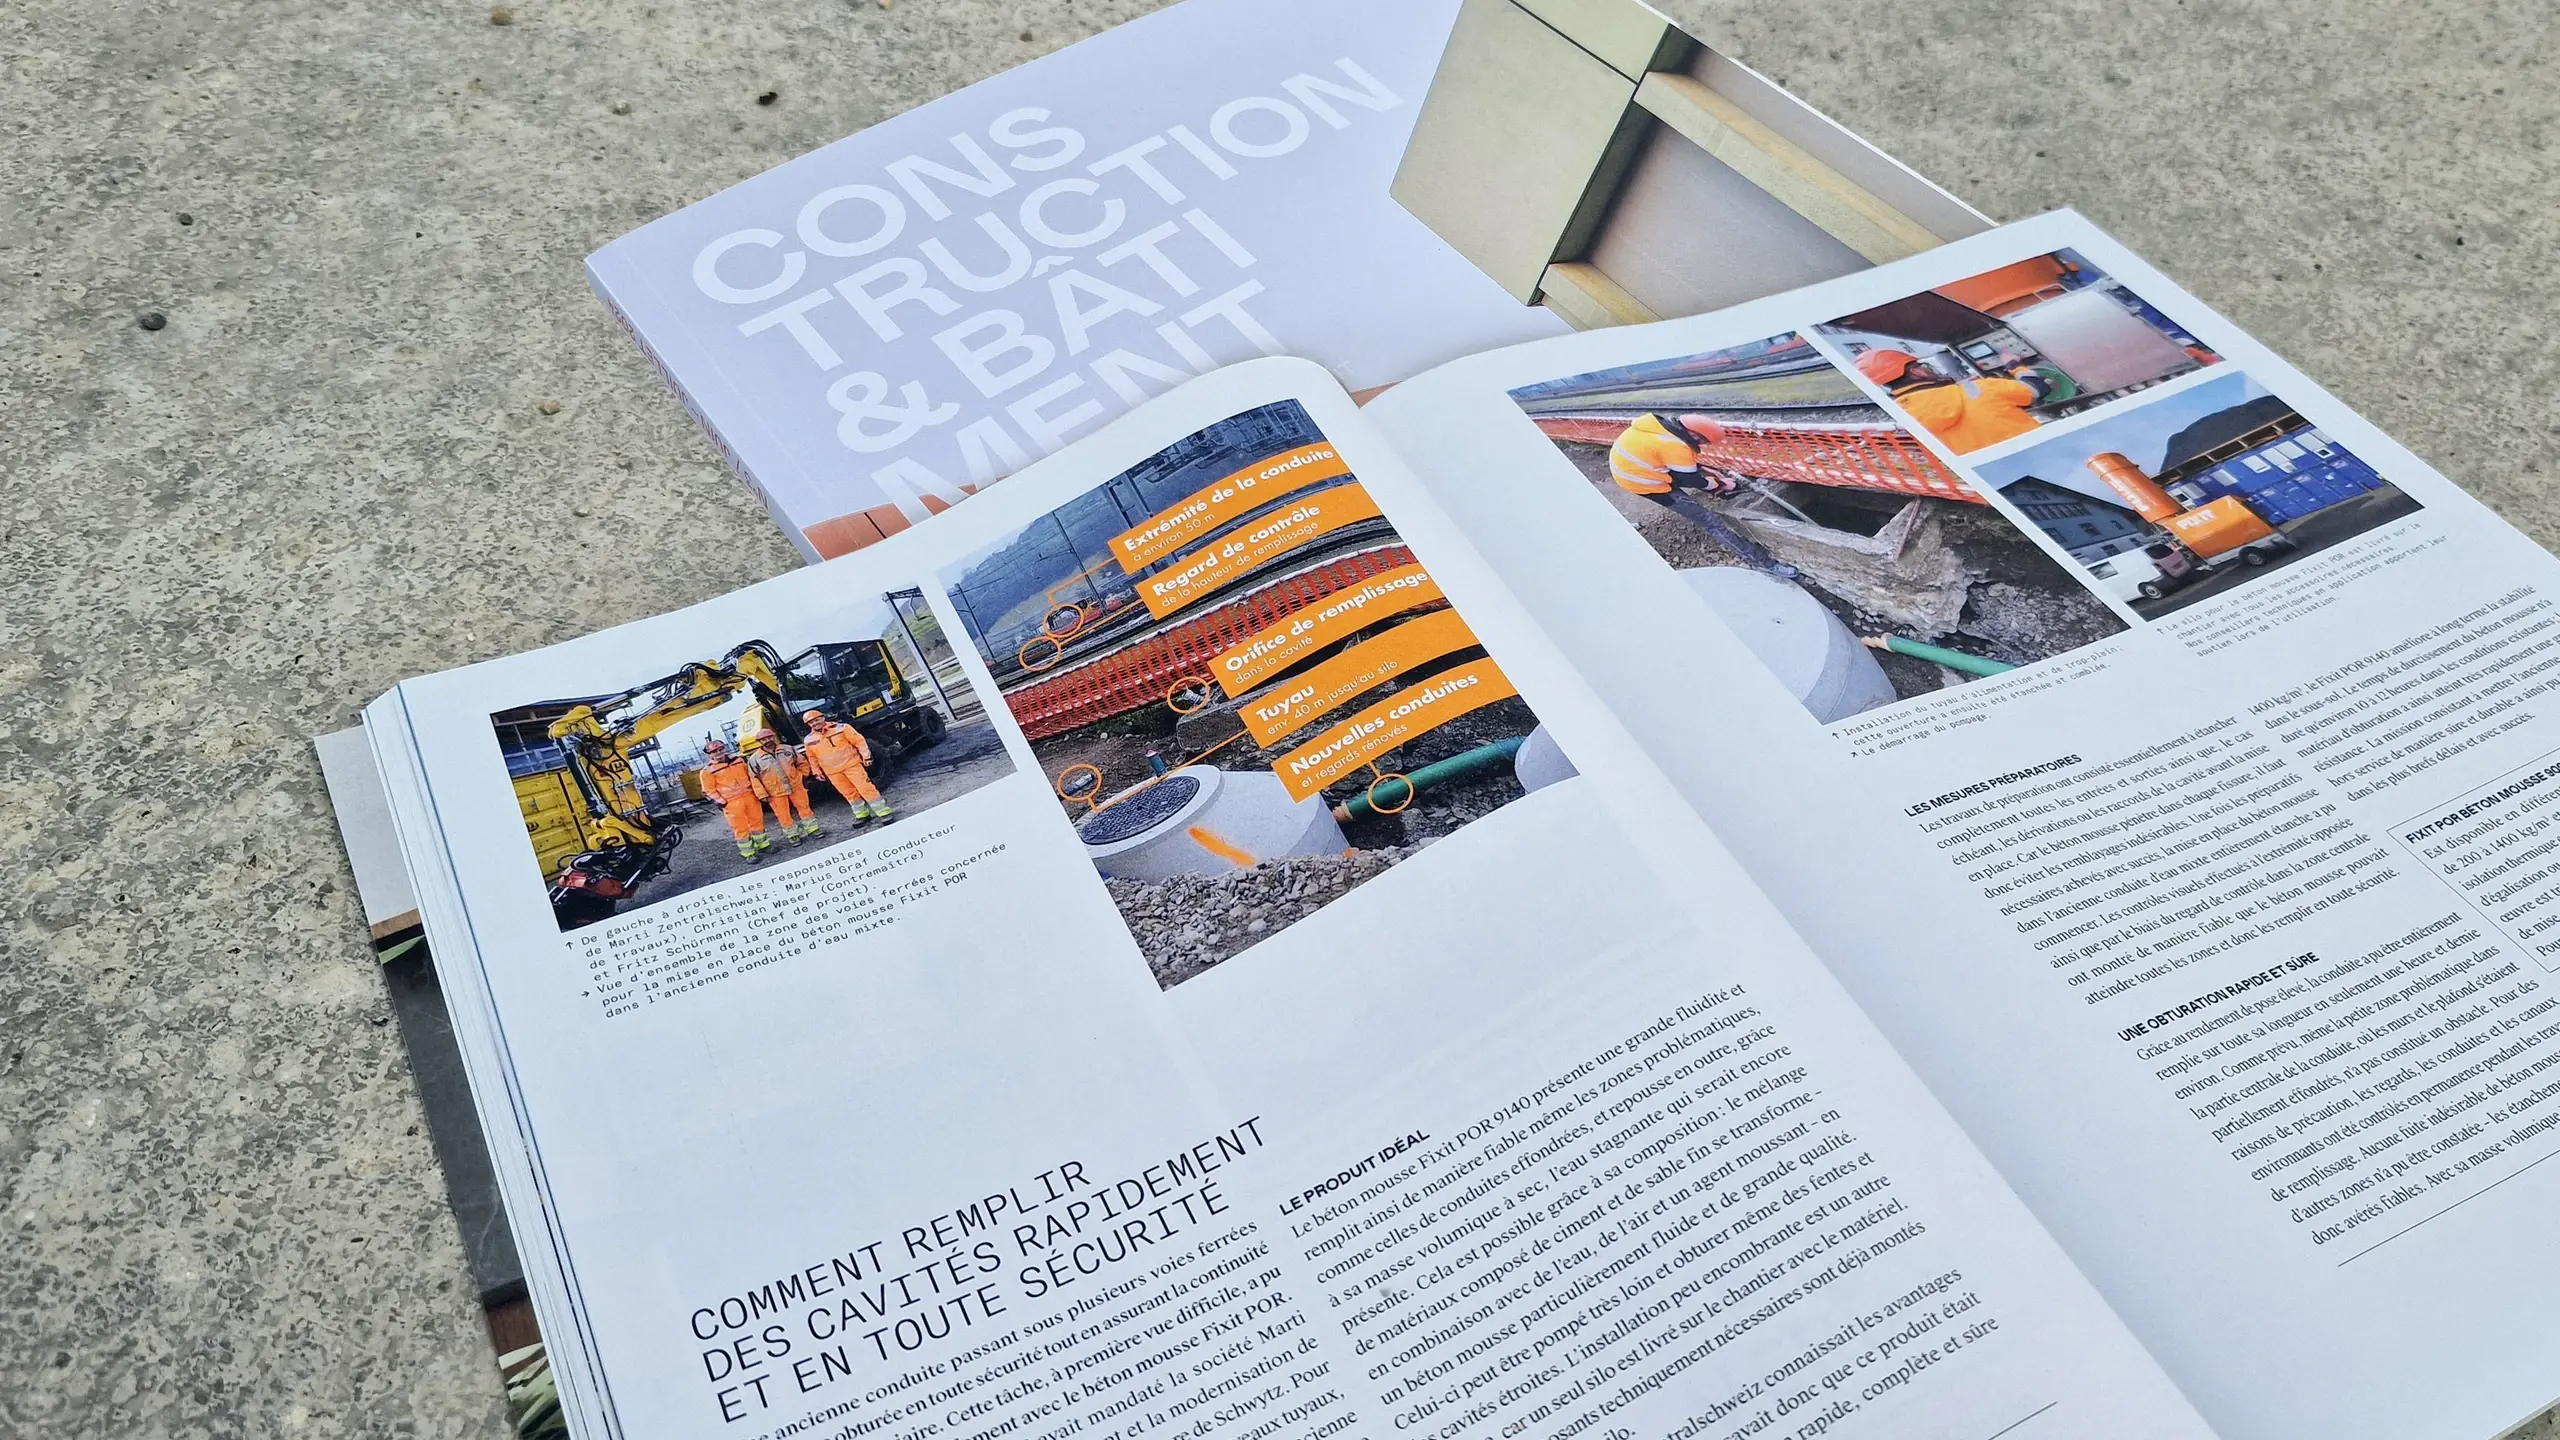 Couverture du magazine « Construction Bâtiment » avec l'article ouvert sur le remplissage de conduites avec Fixit POR à la gare de Schwyz